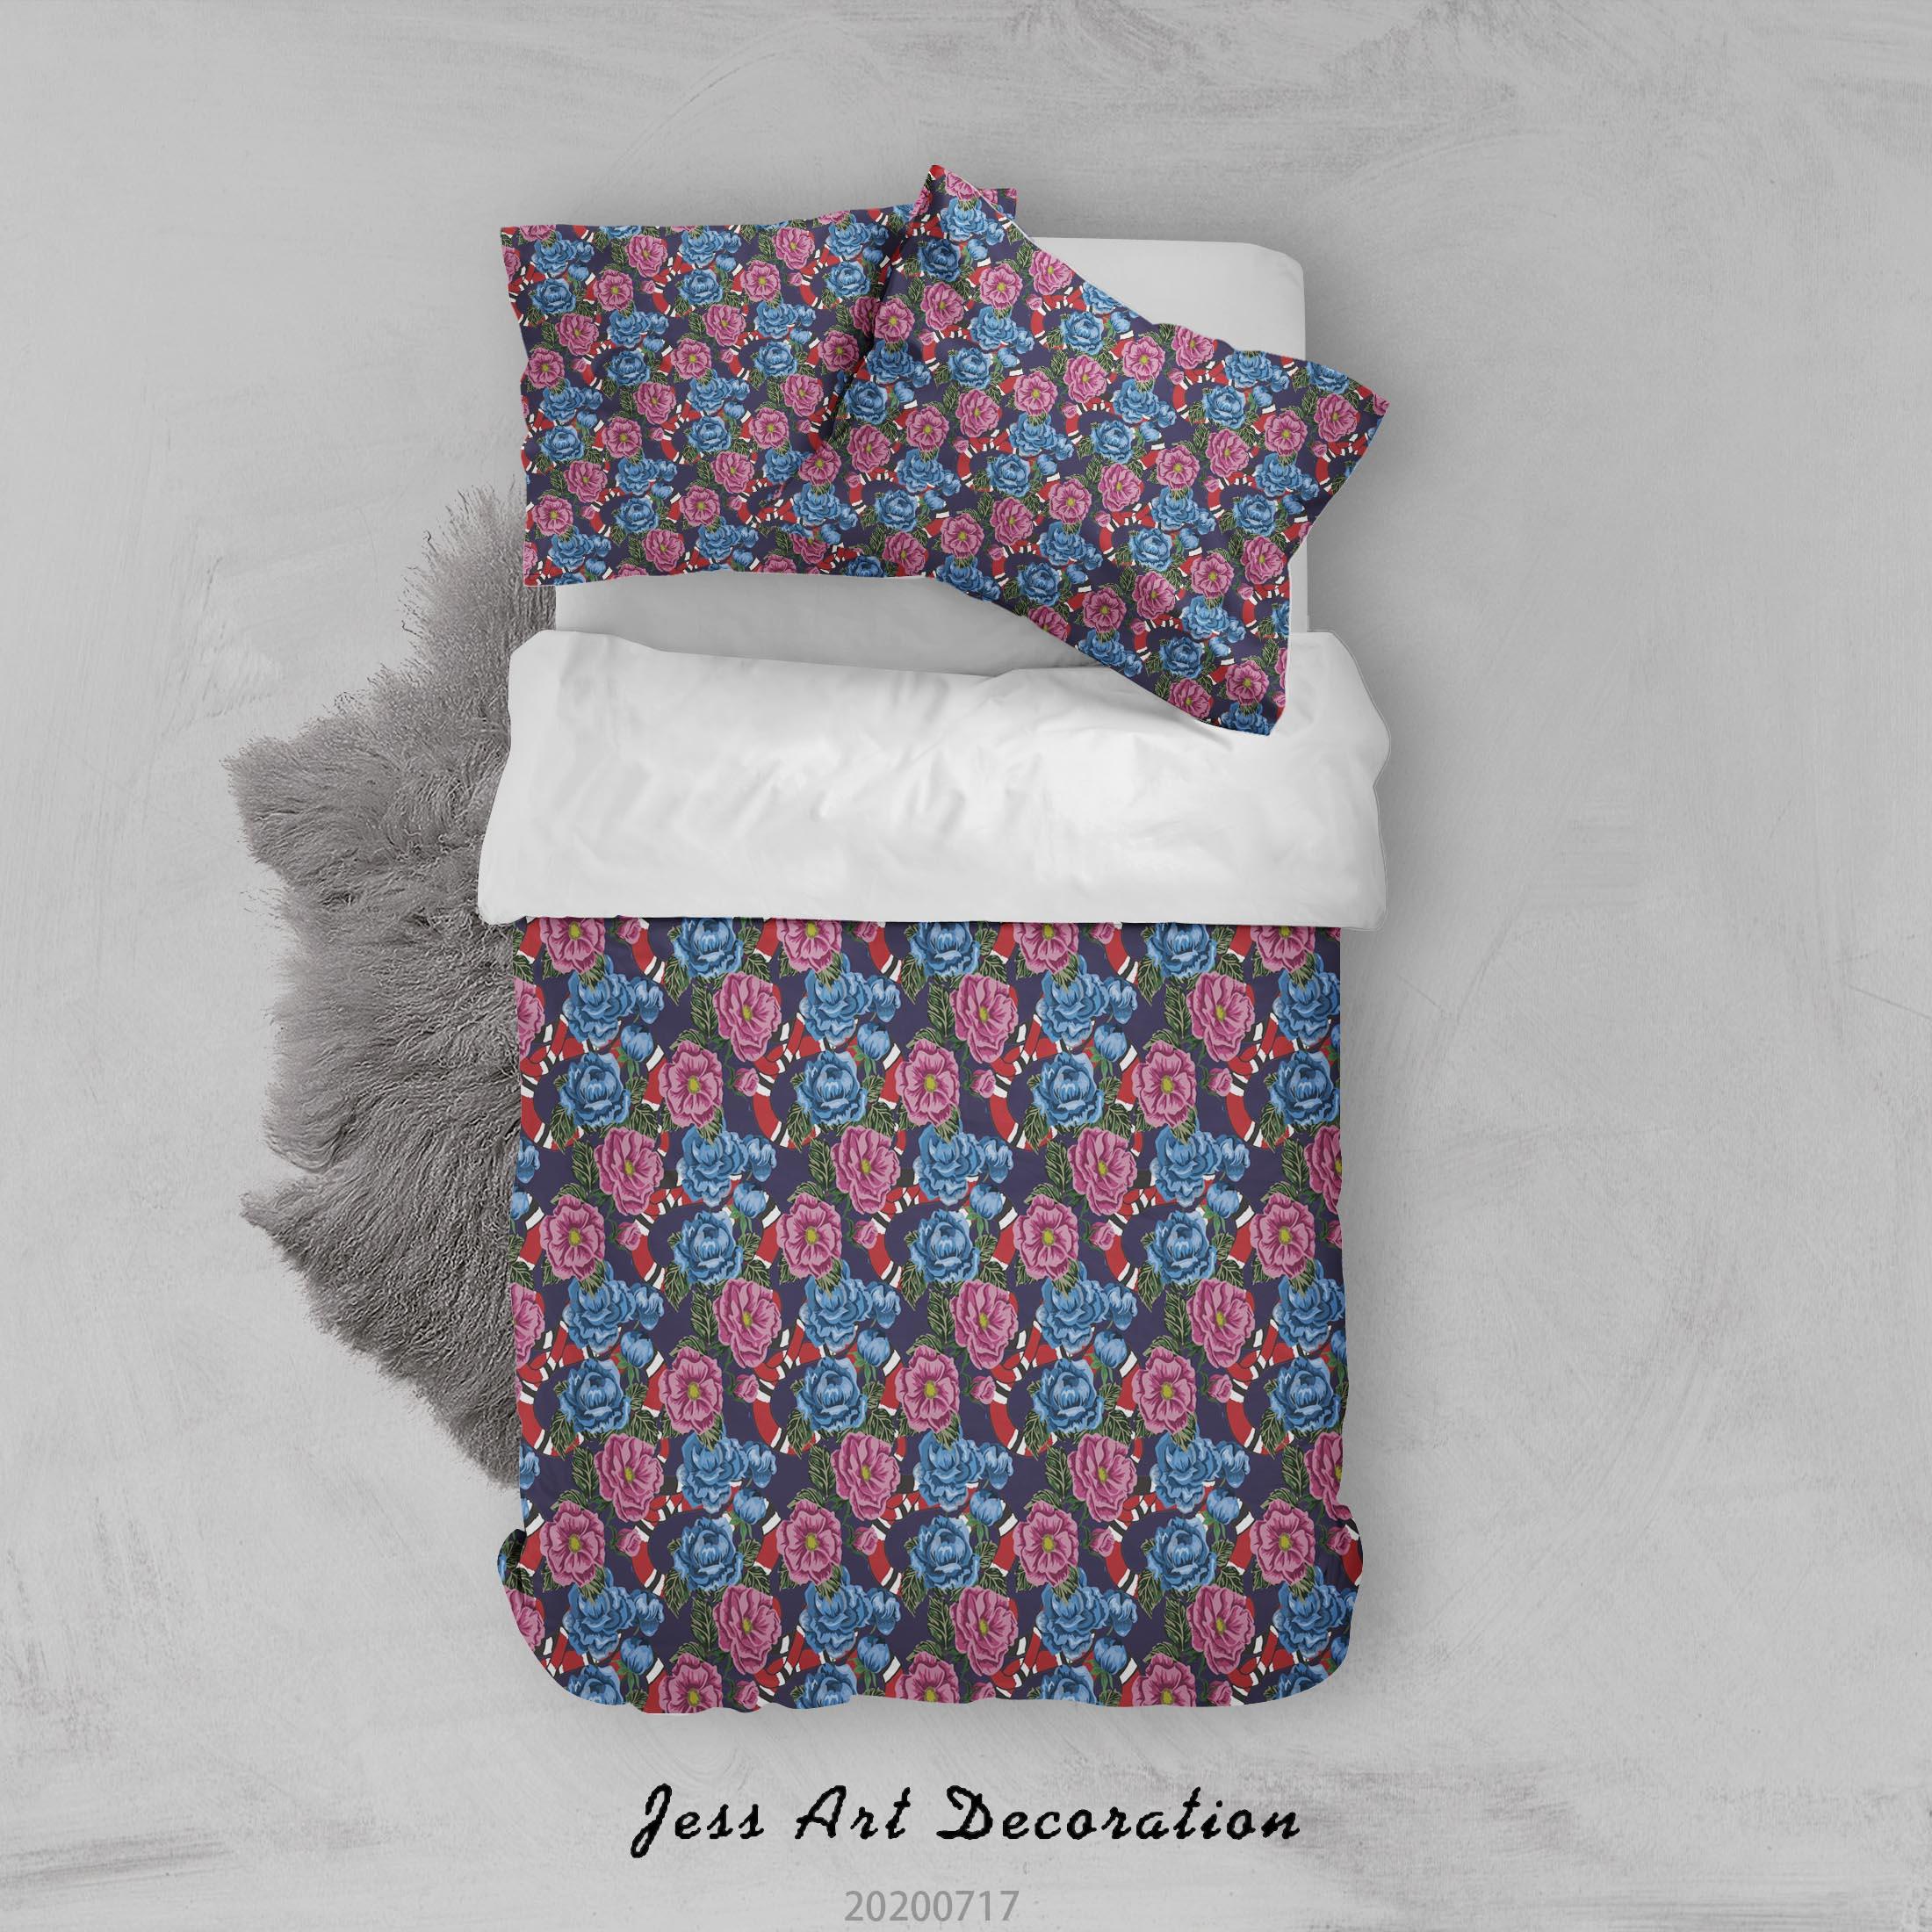 3D Vintage Floral Quilt Cover Set Bedding Set Duvet Cover Pillowcases WJ 1580- Jess Art Decoration